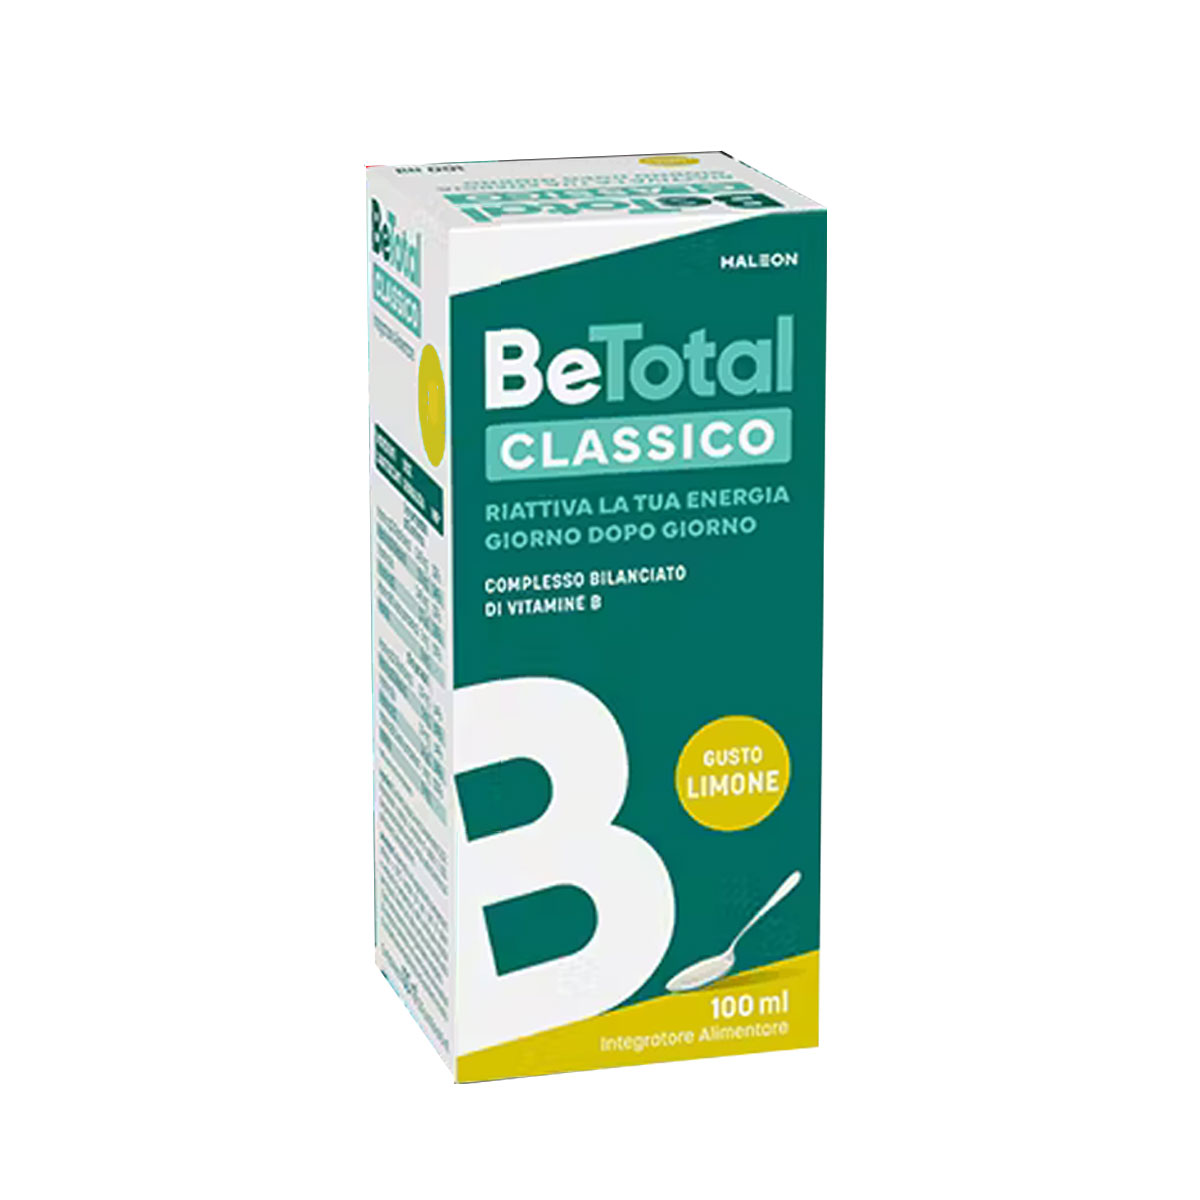 Be-total Classico Sciroppo Vitamina B Gusto Limone 100ml - Top Farmacia